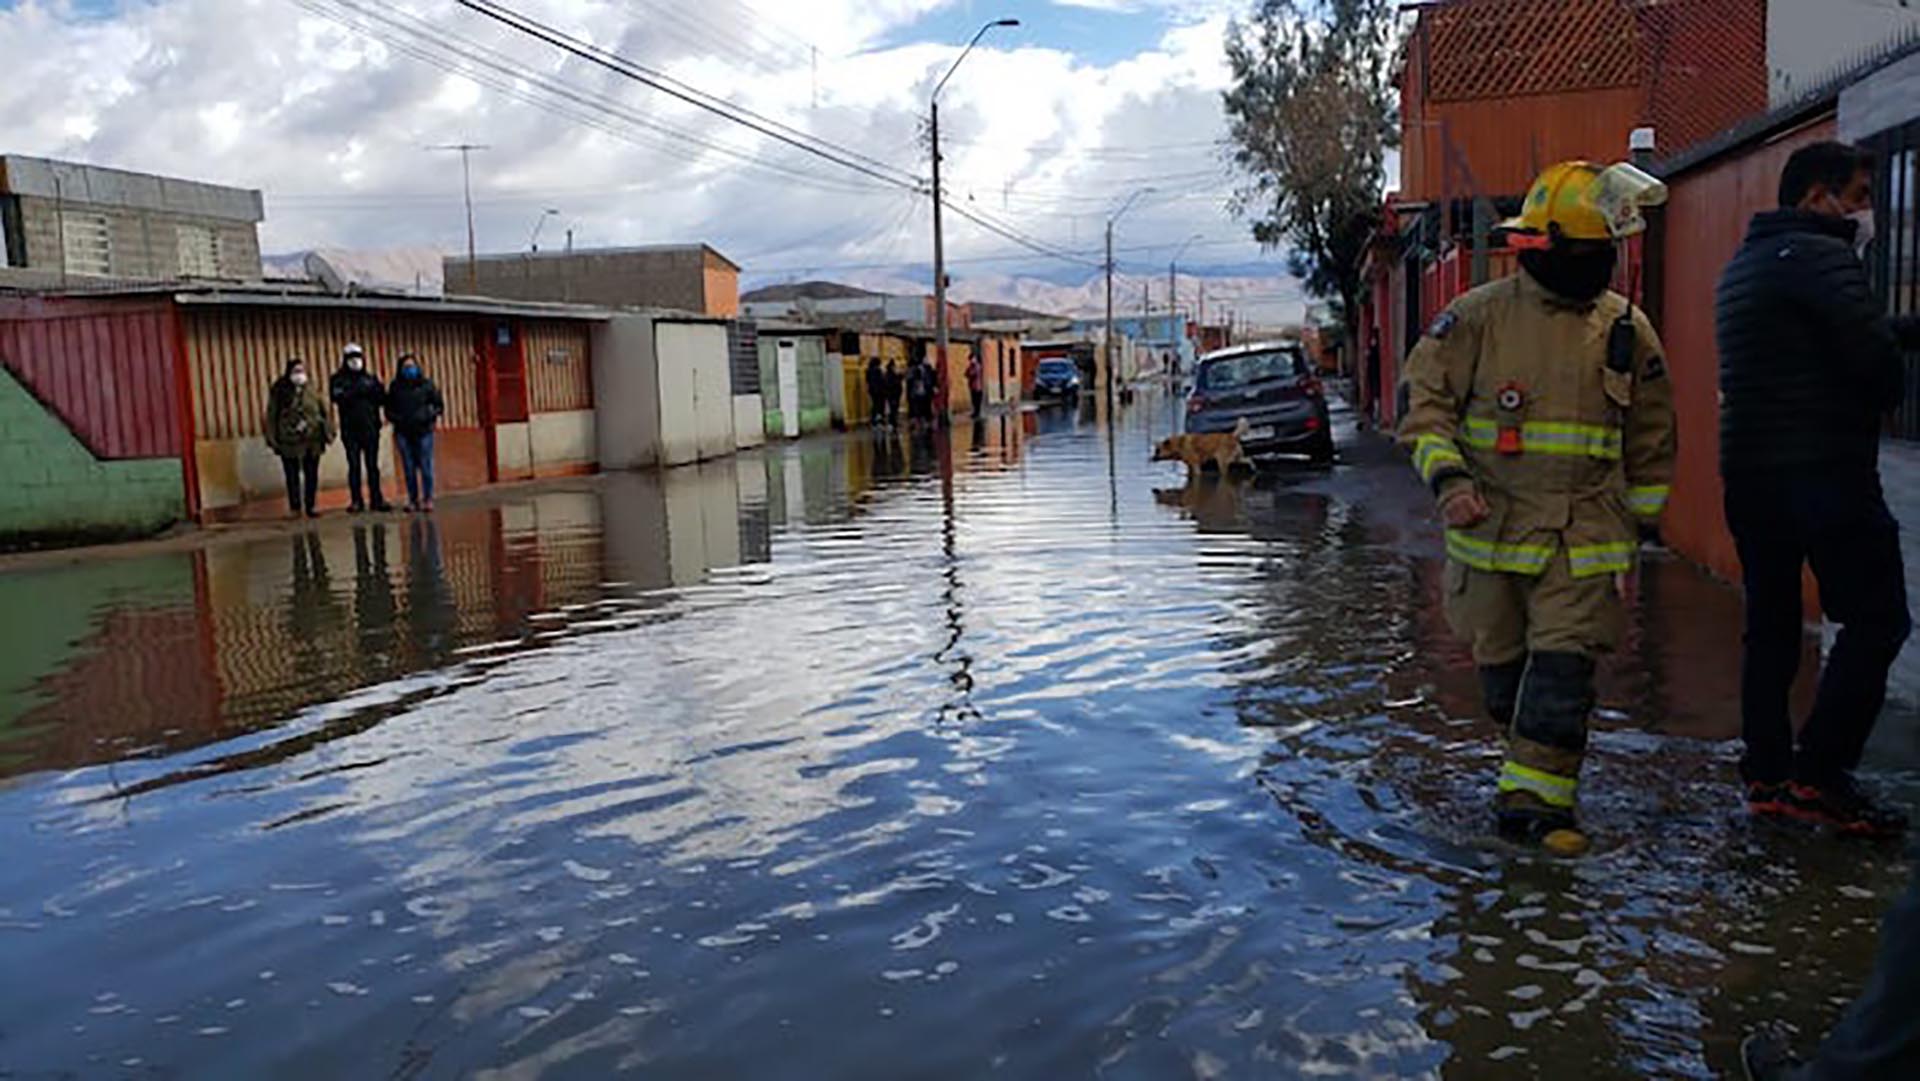 Chile sería uno de los países de América Latina más afectado por las inundaciones según IA de Google